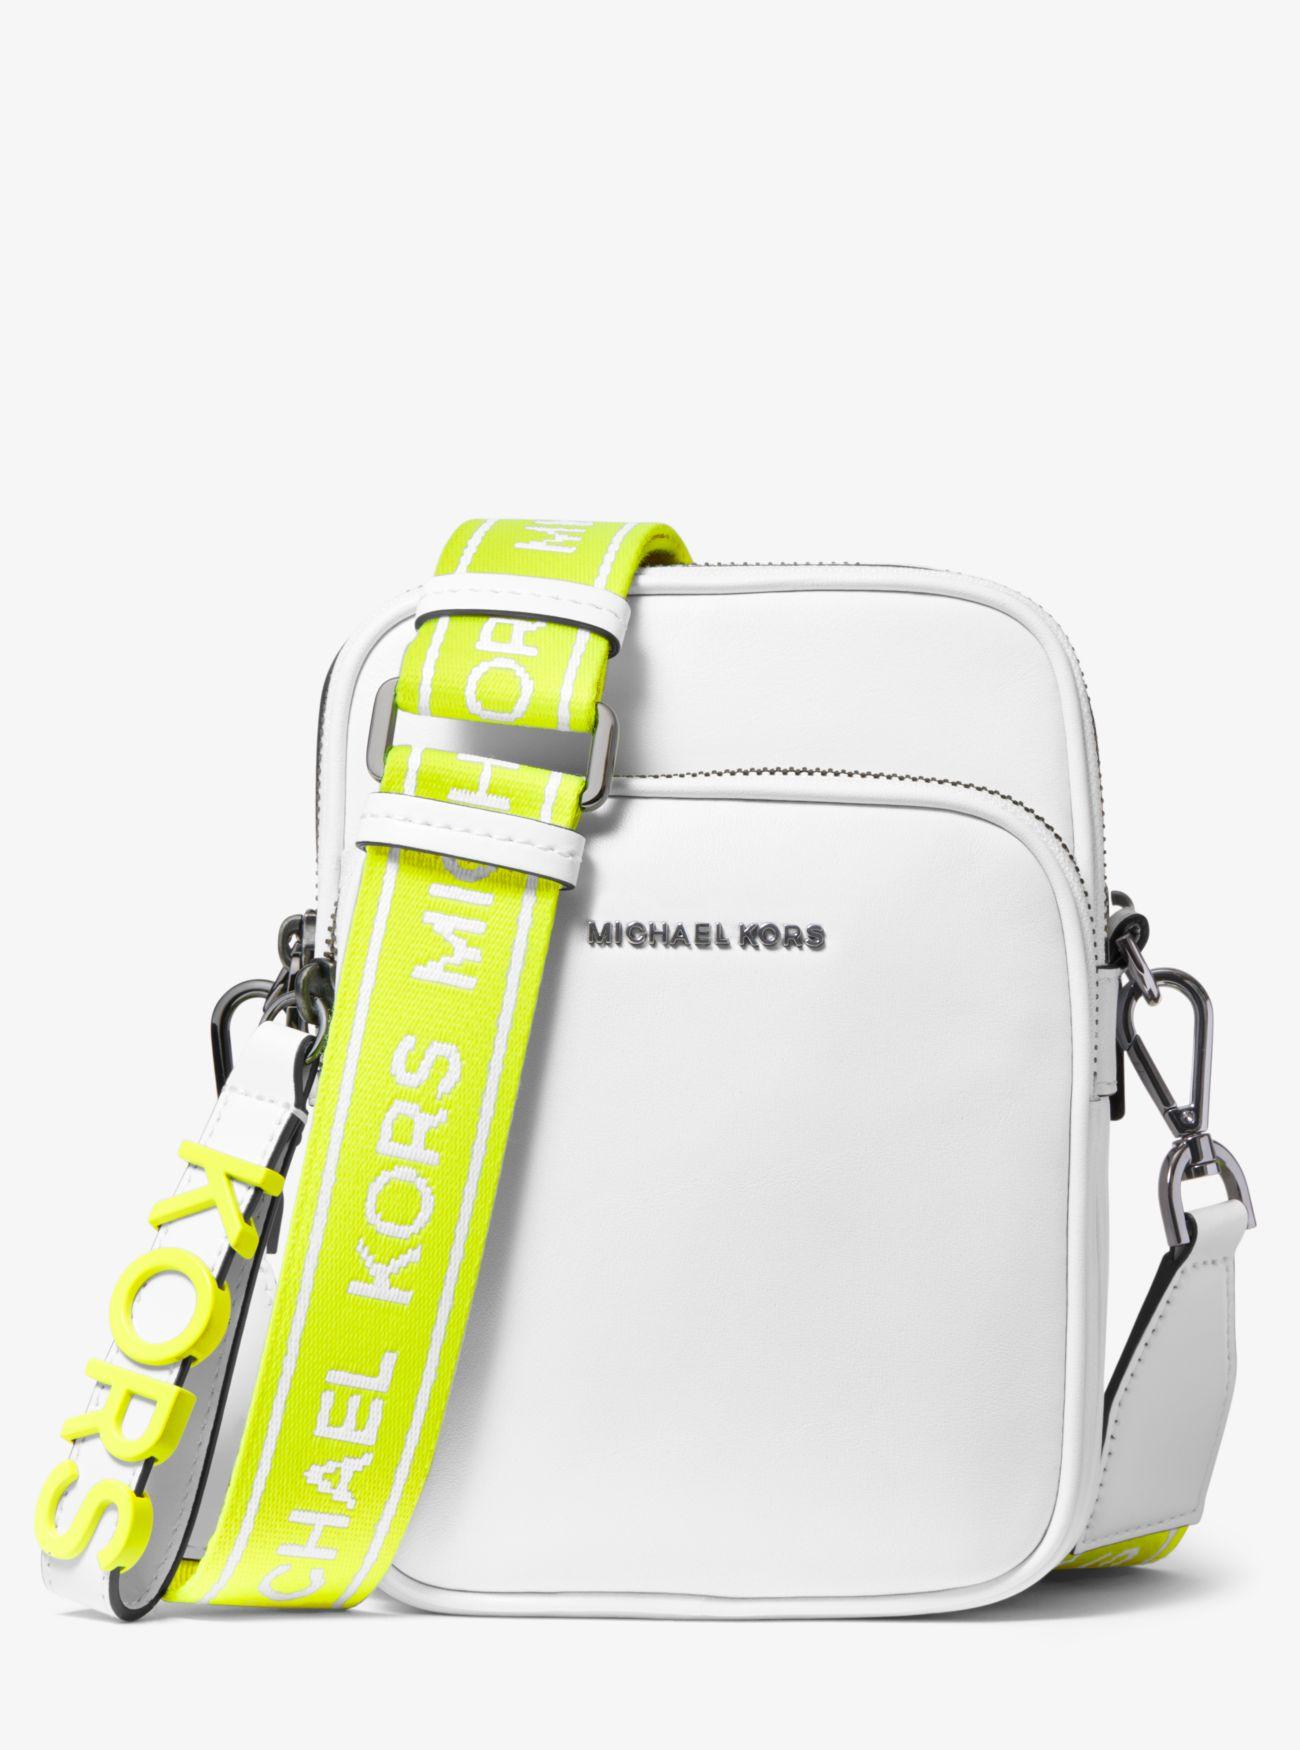 Michael Kors Medium Leather Neon Logo Tape Crossbody Bag in White - Lyst